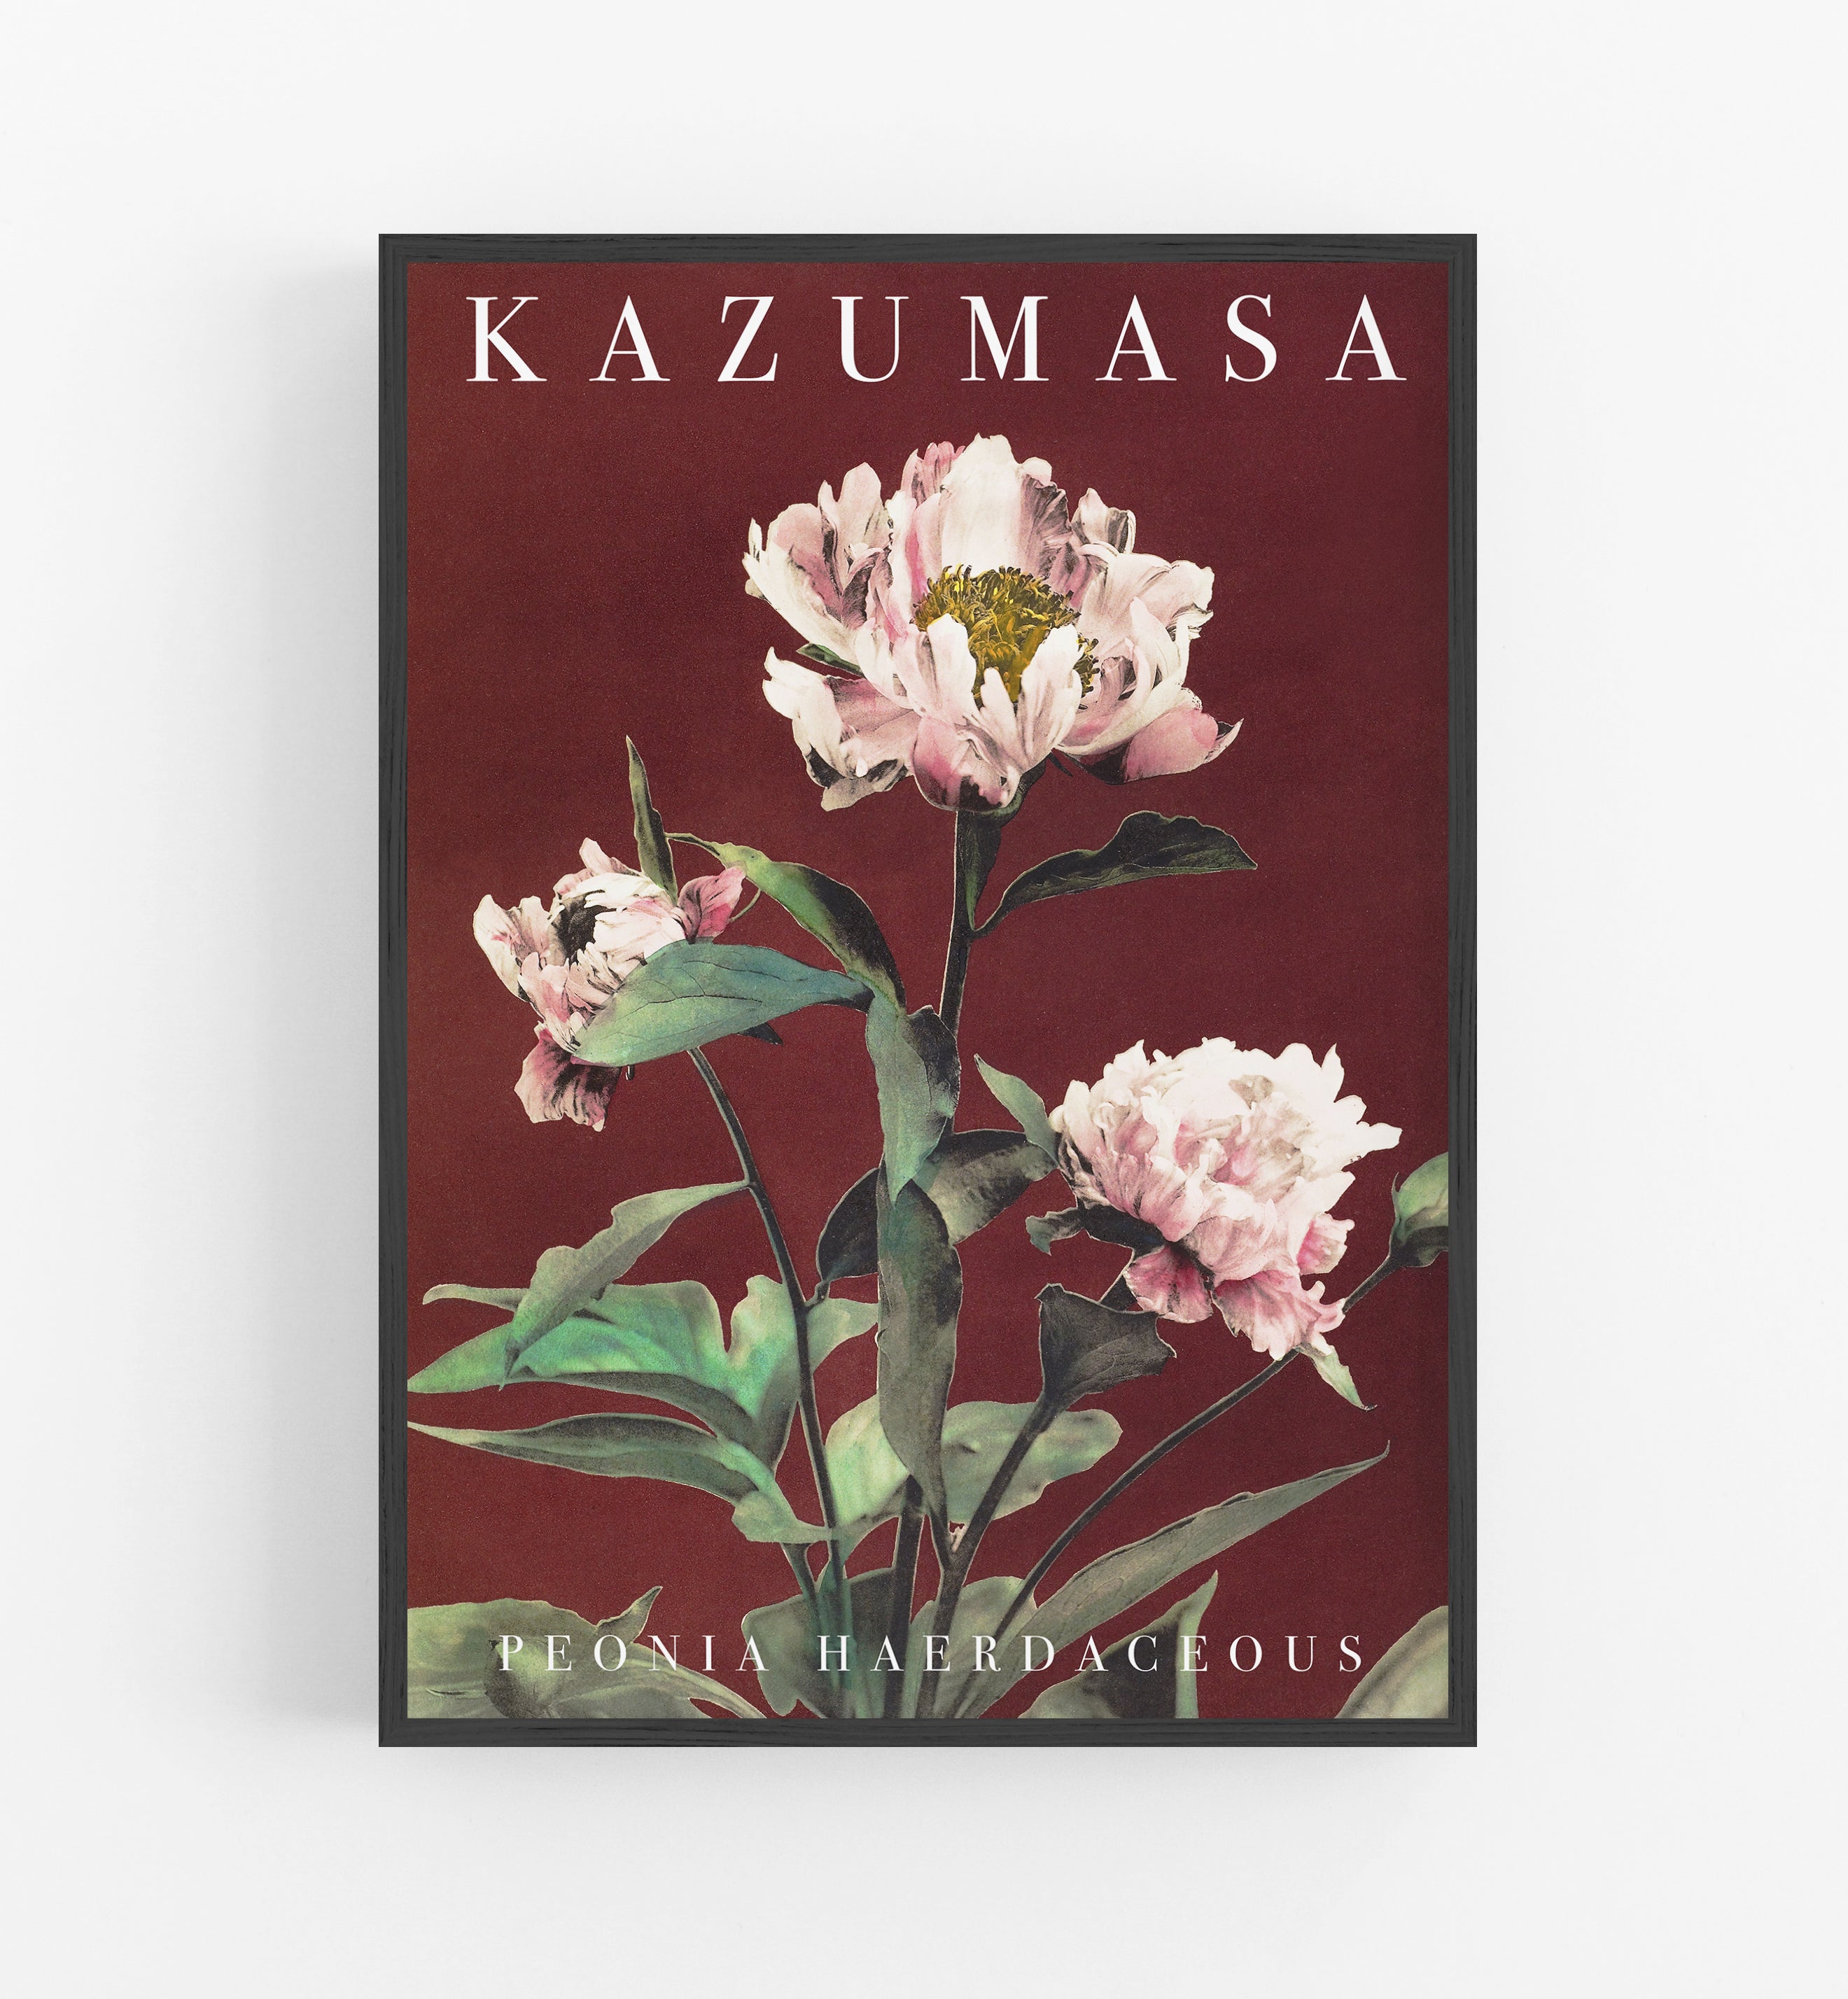 Kazumasa Peonia